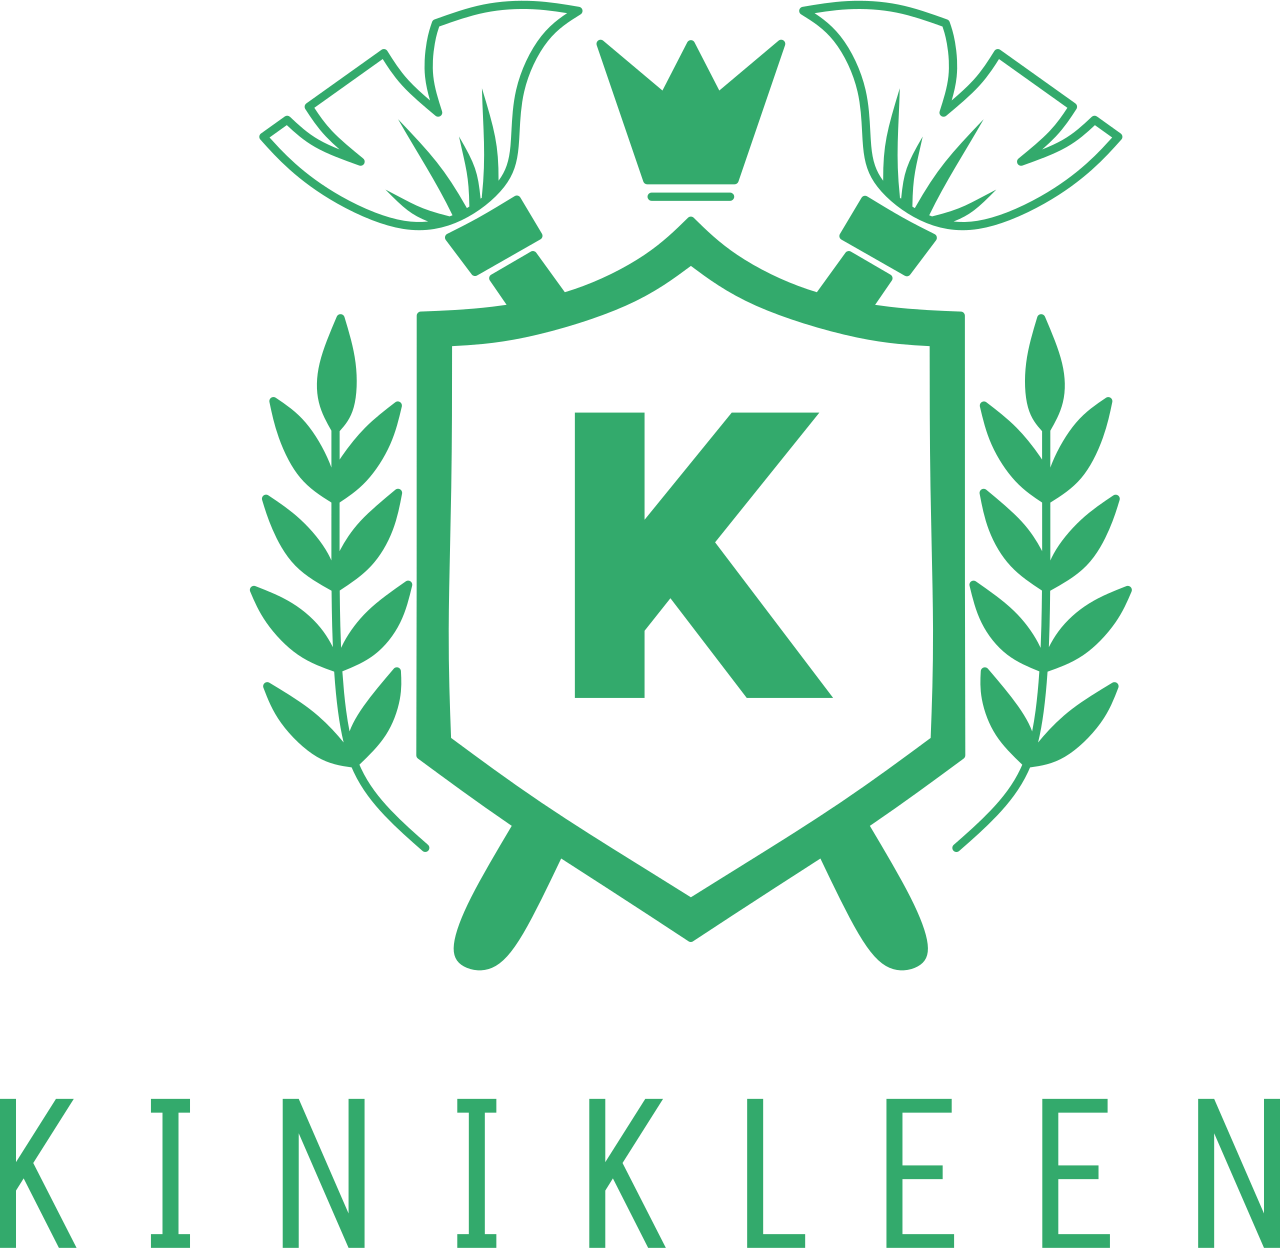 KINIKLEEN 's logo